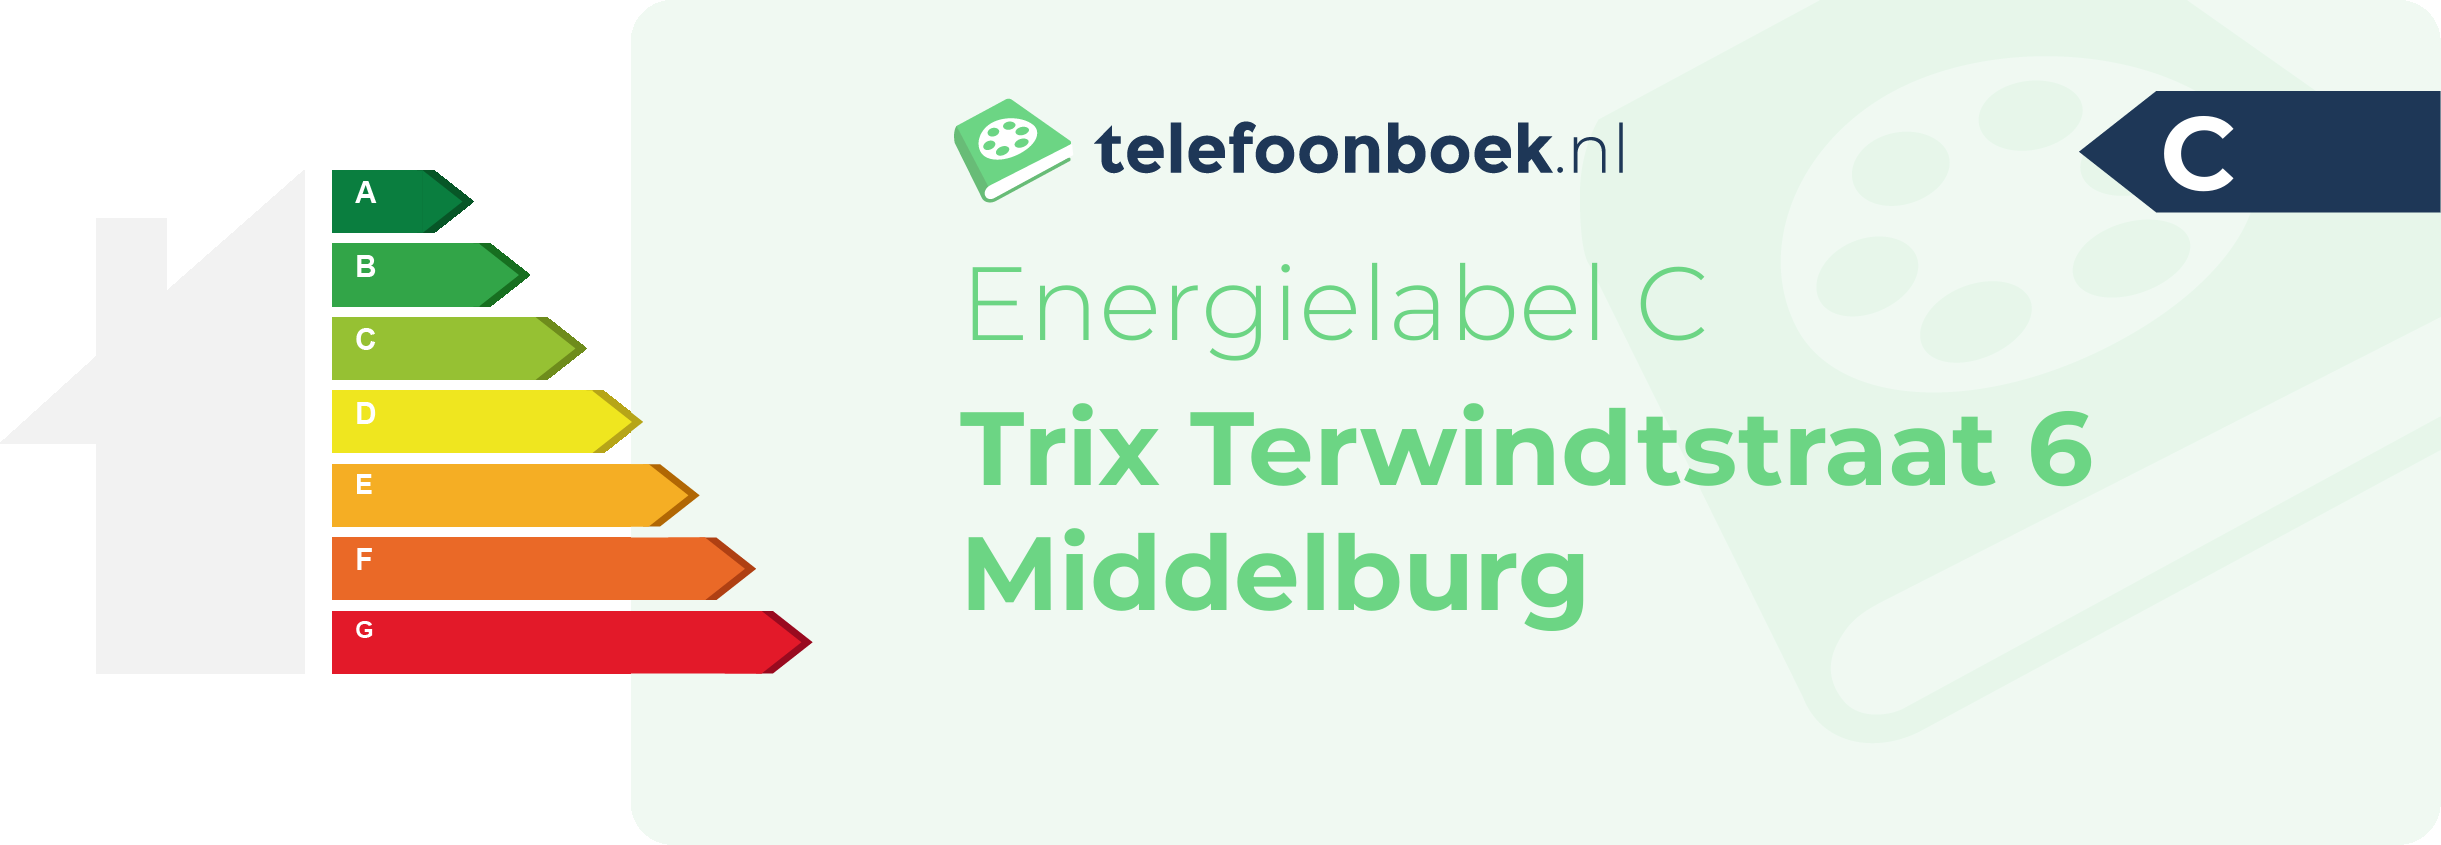 Energielabel Trix Terwindtstraat 6 Middelburg